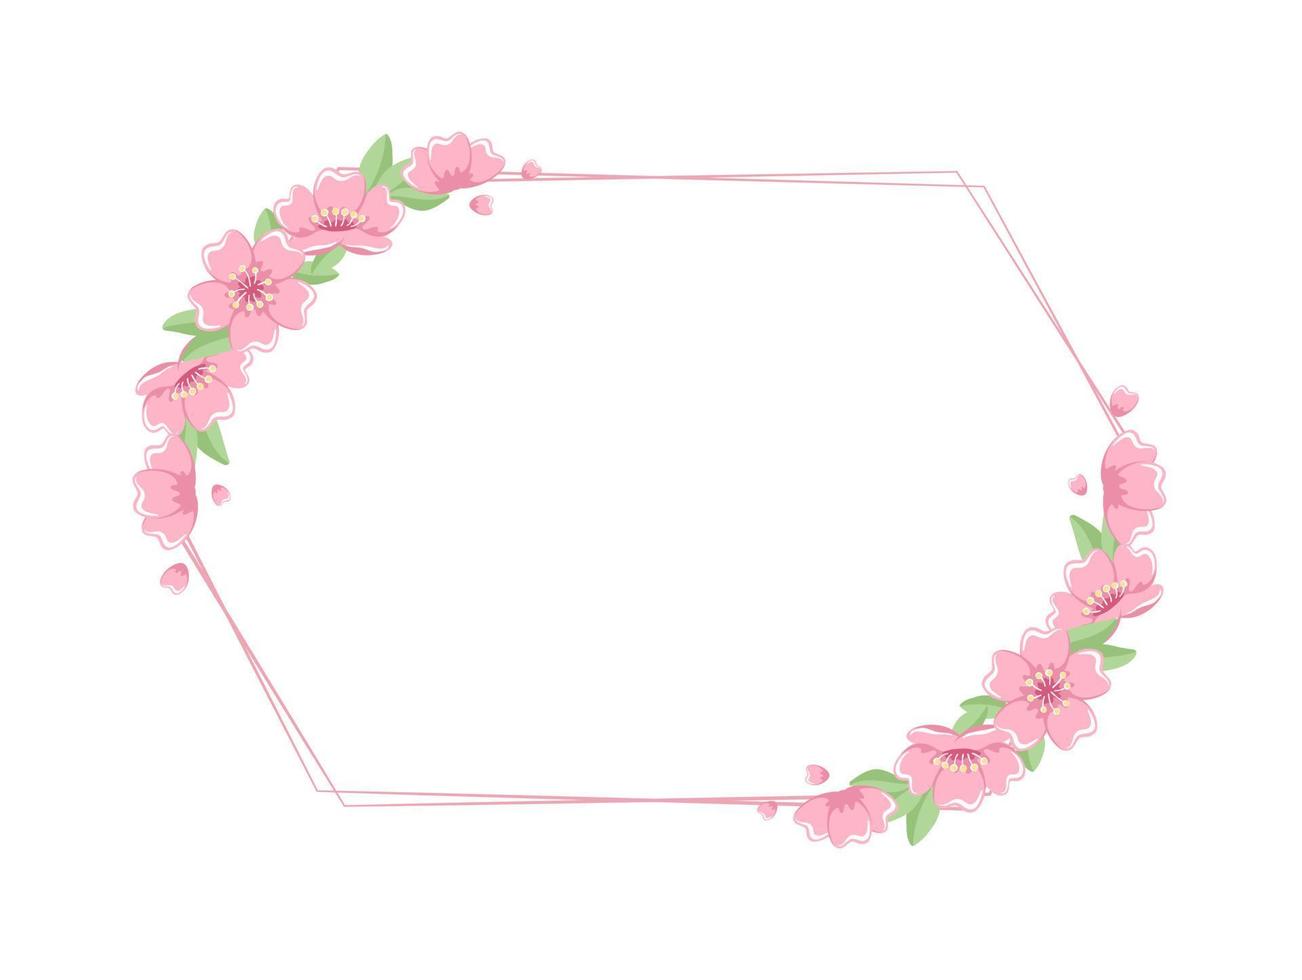 quadros de flor de cerejeira. borda floral geométrica do hexágono. vetor